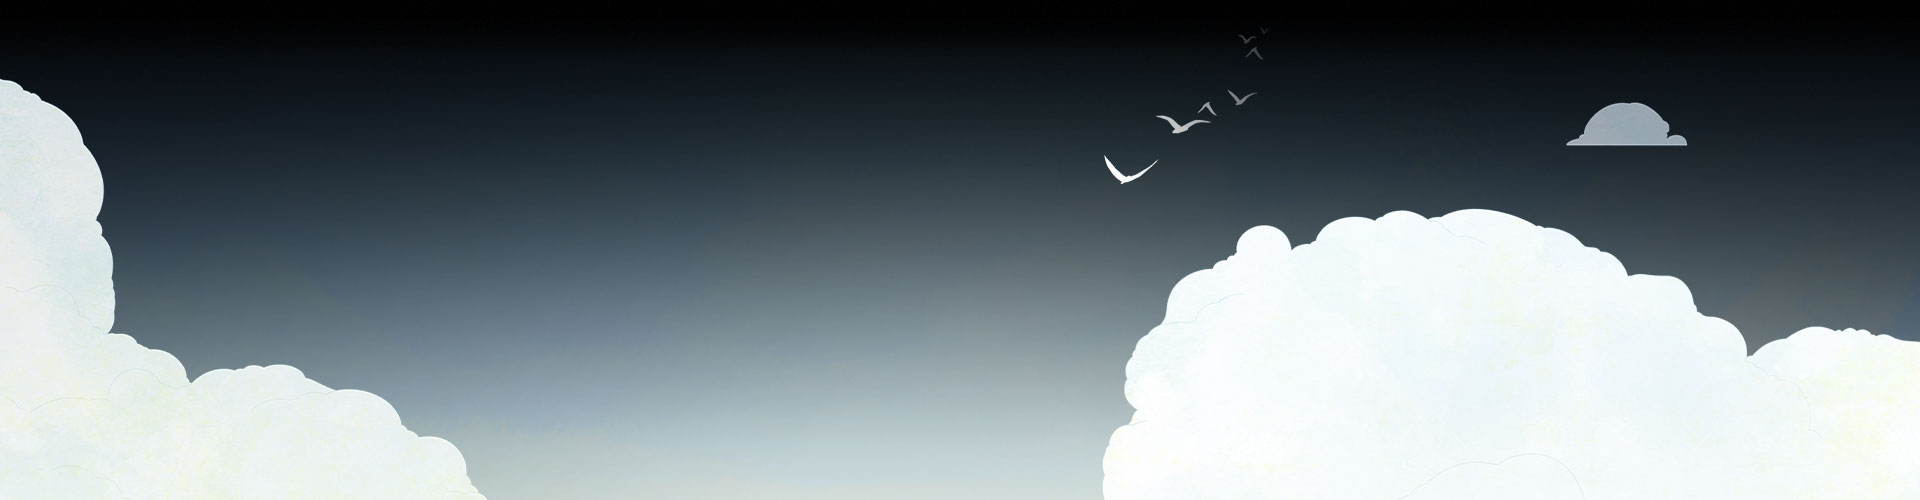 Обложка с изображением облаков и улетающих птиц